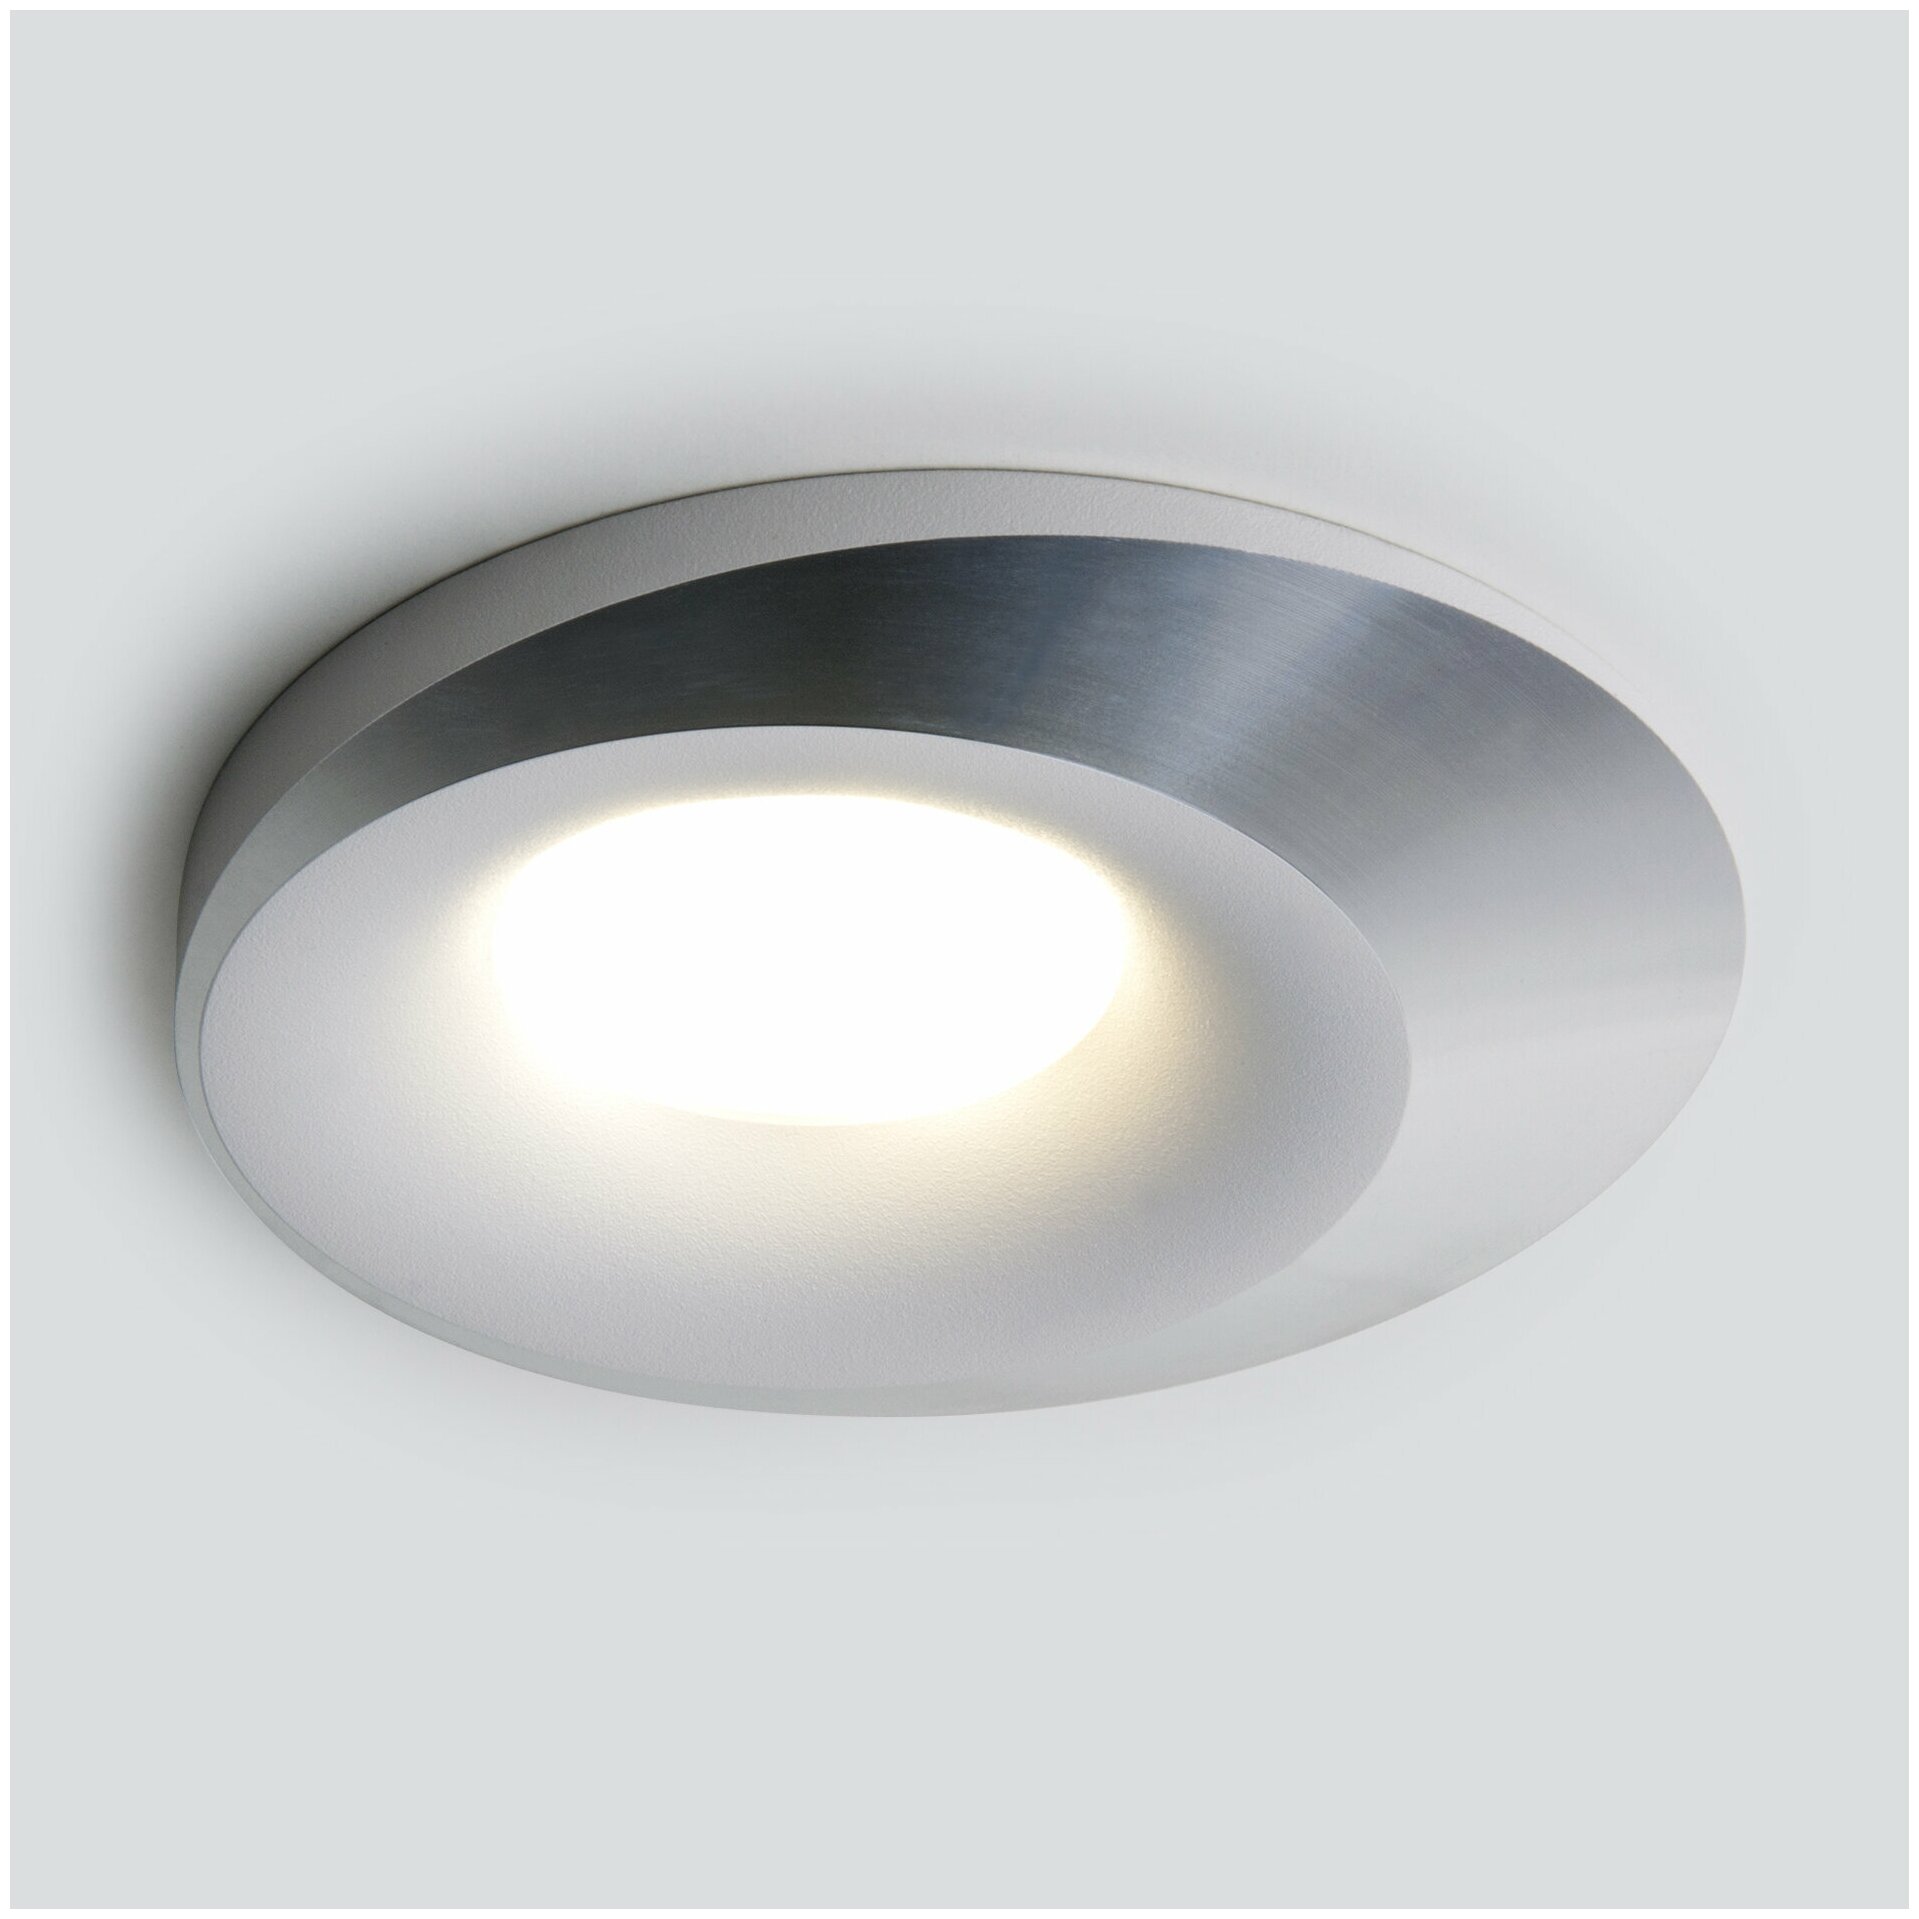 Встраиваемый точечный светильник с LED подсветкой Elektrostandard 124 MR16 белый/серебро